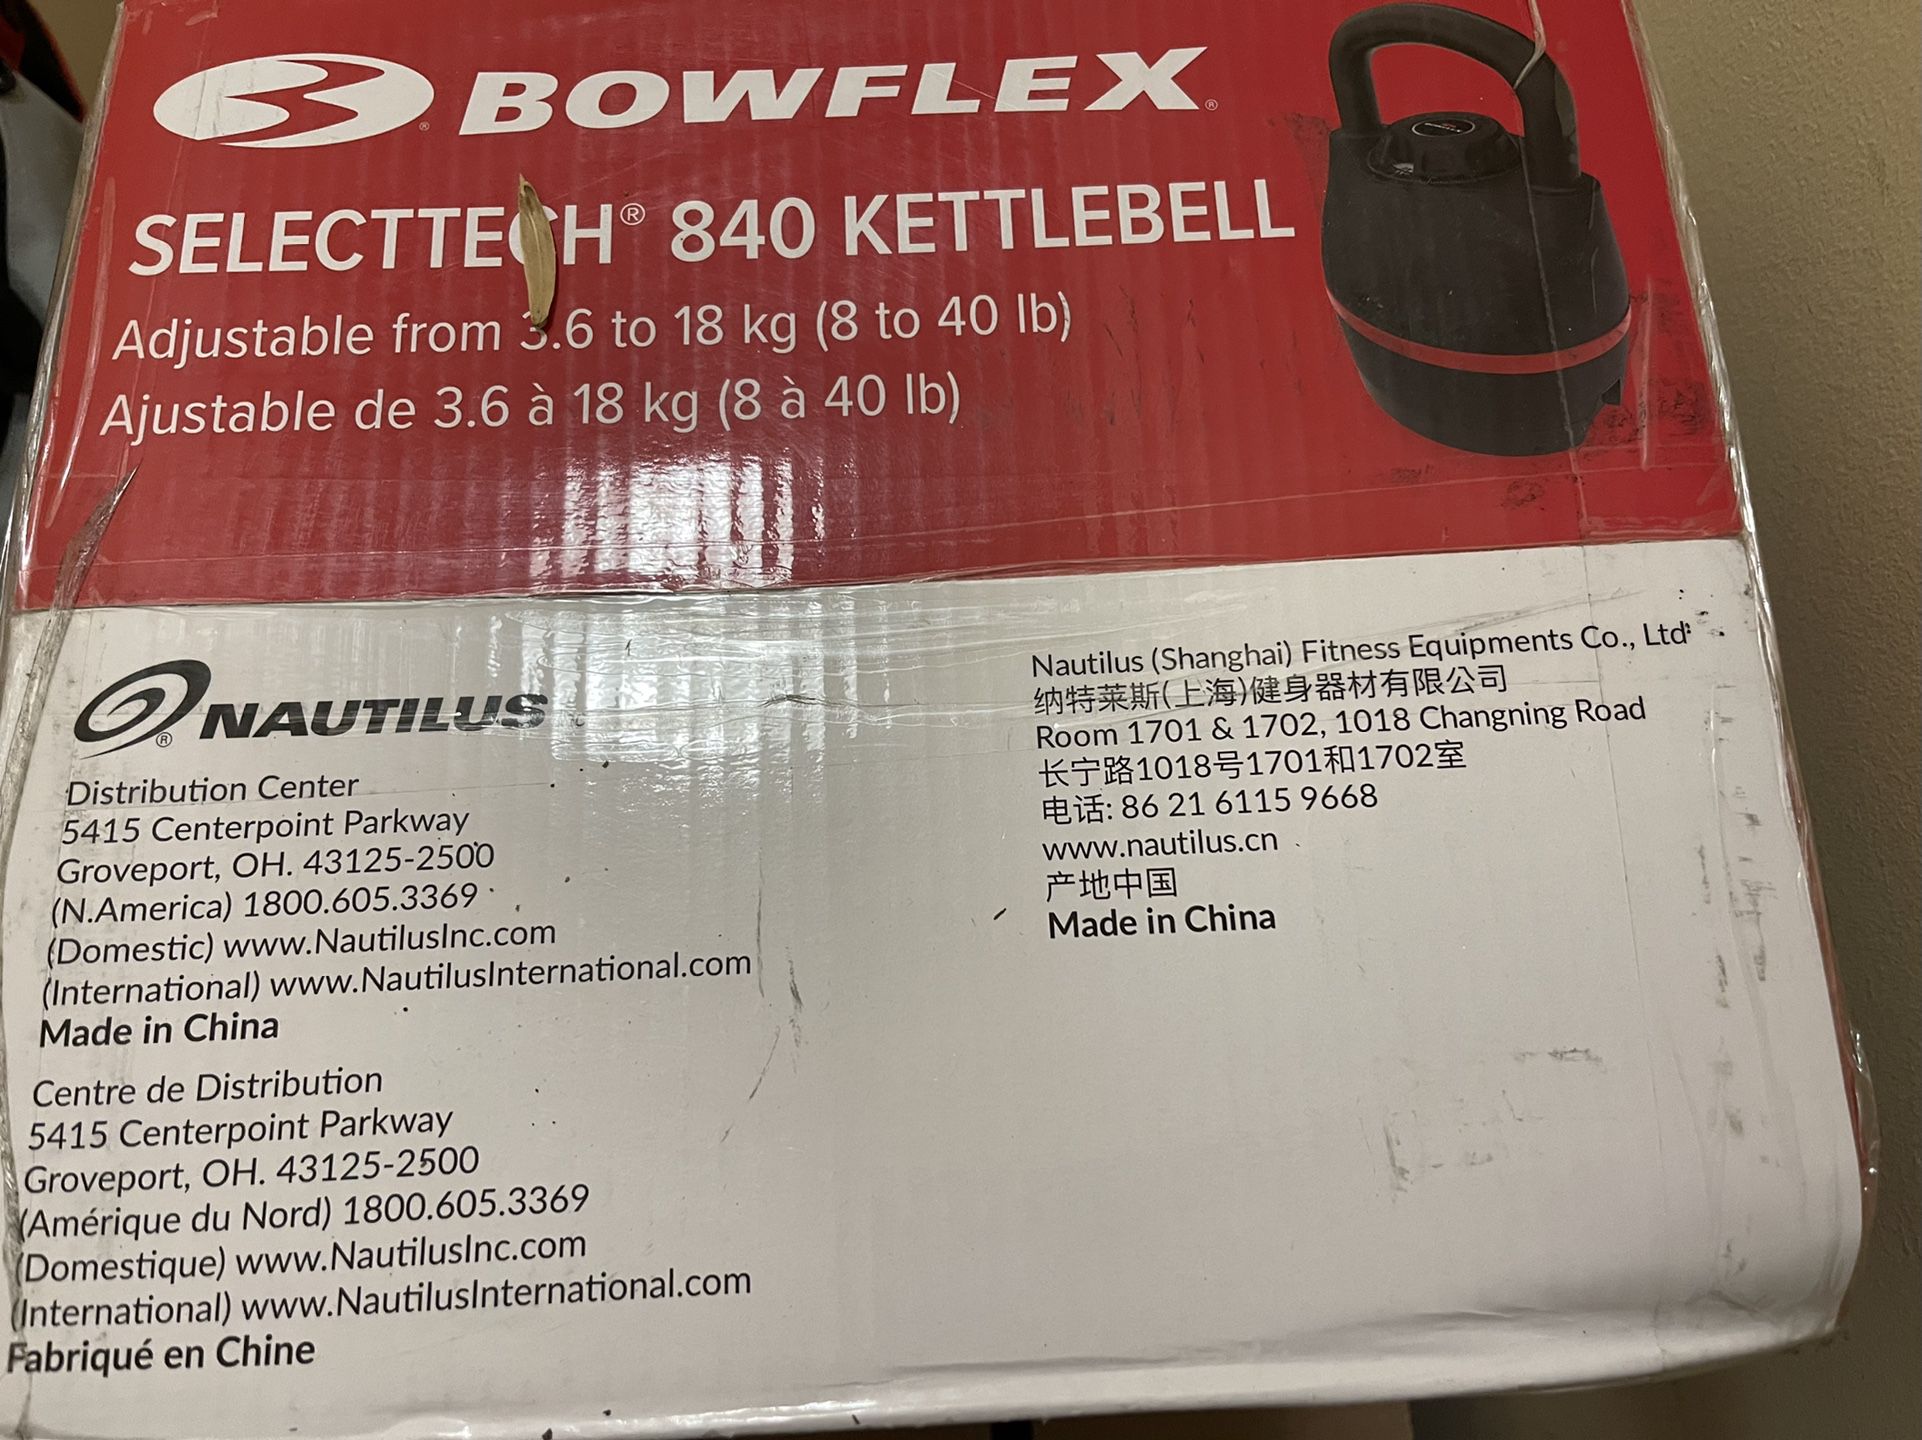 Bowflex SelectTech 840 adjustable kettlebell new